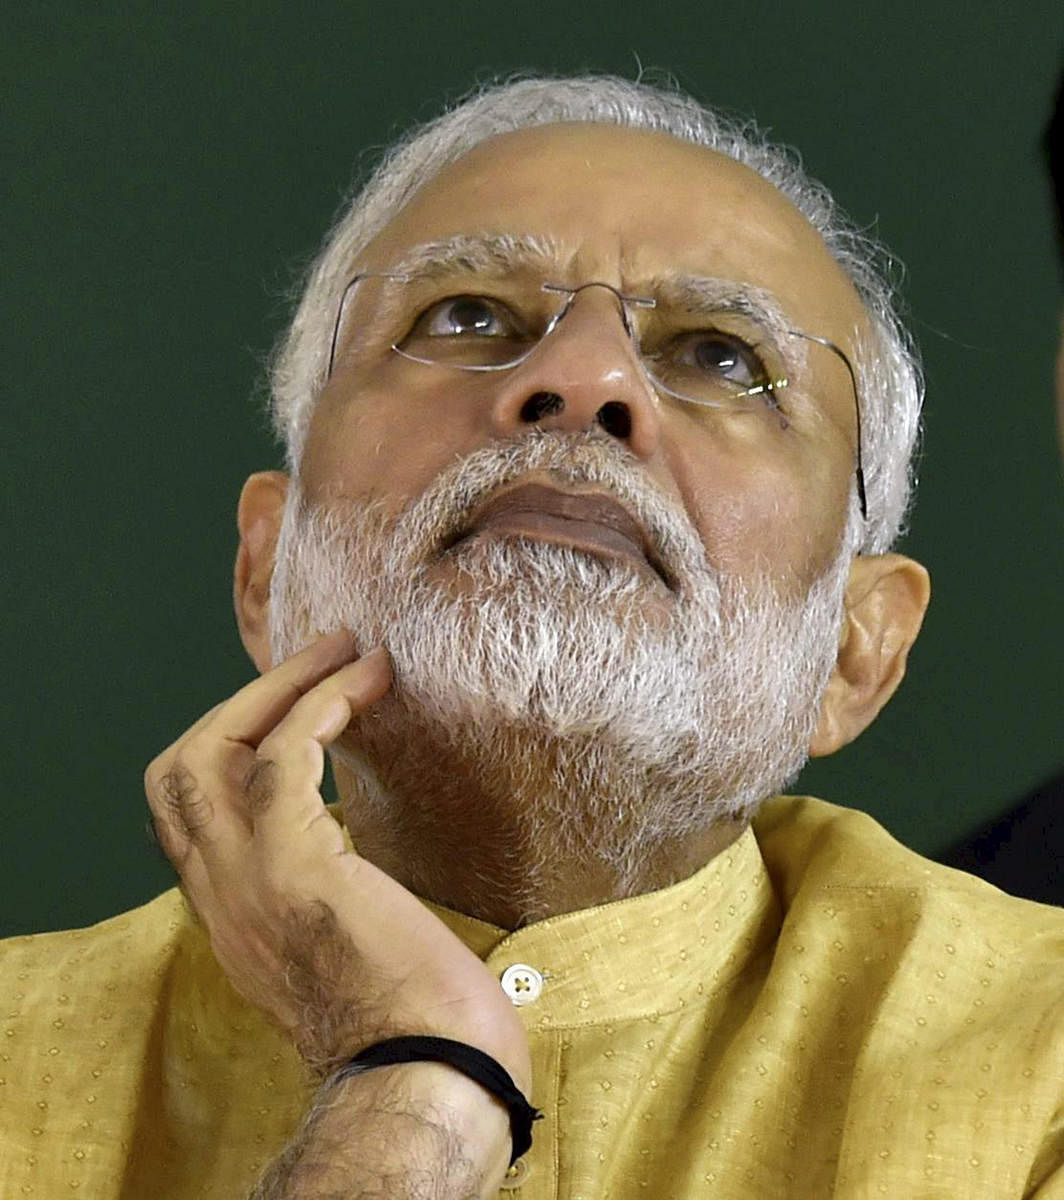 V-P, PM saddened by Sridevi's demise